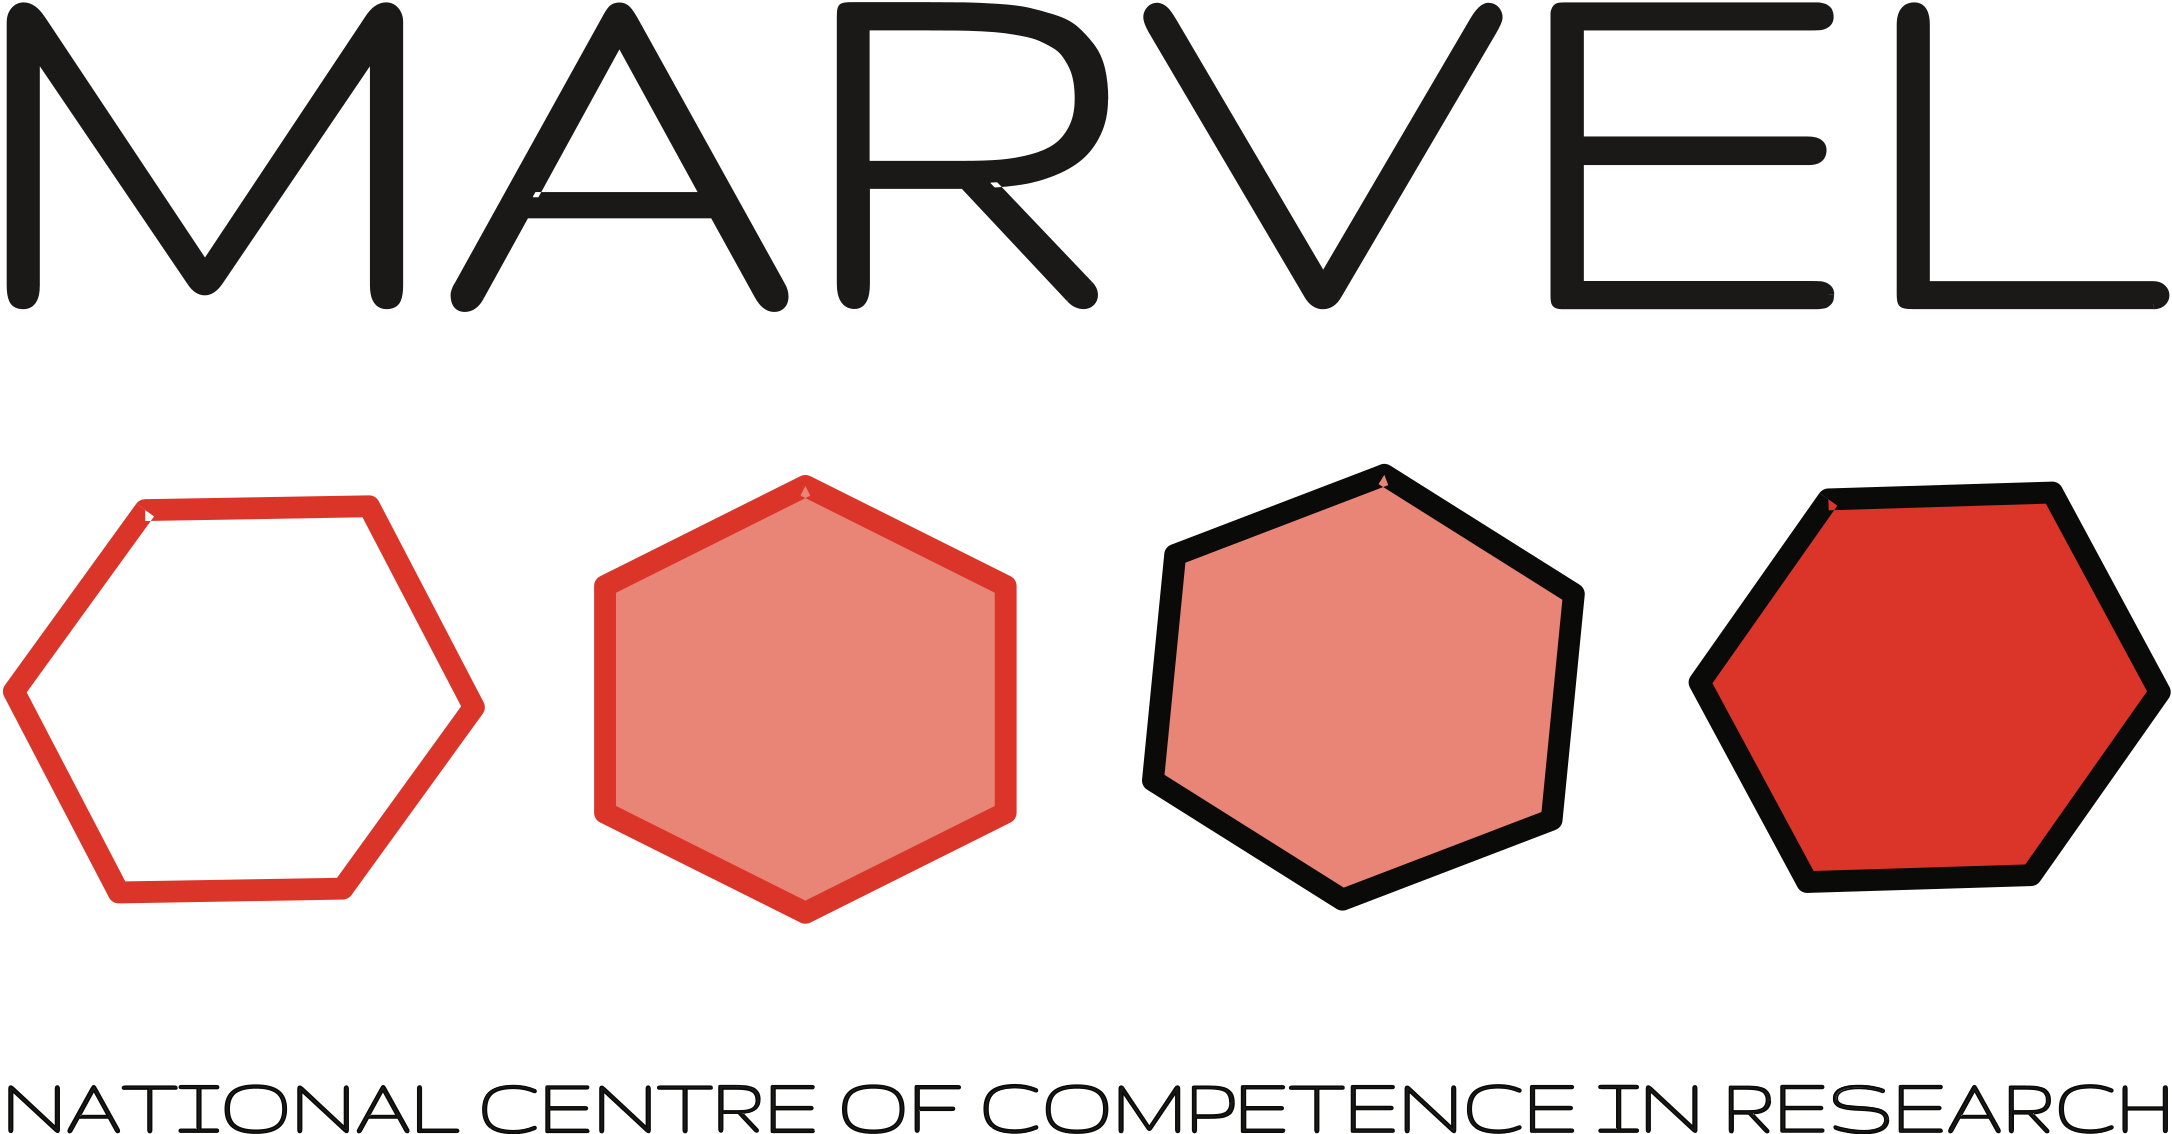 _images/MARVEL-logo.png